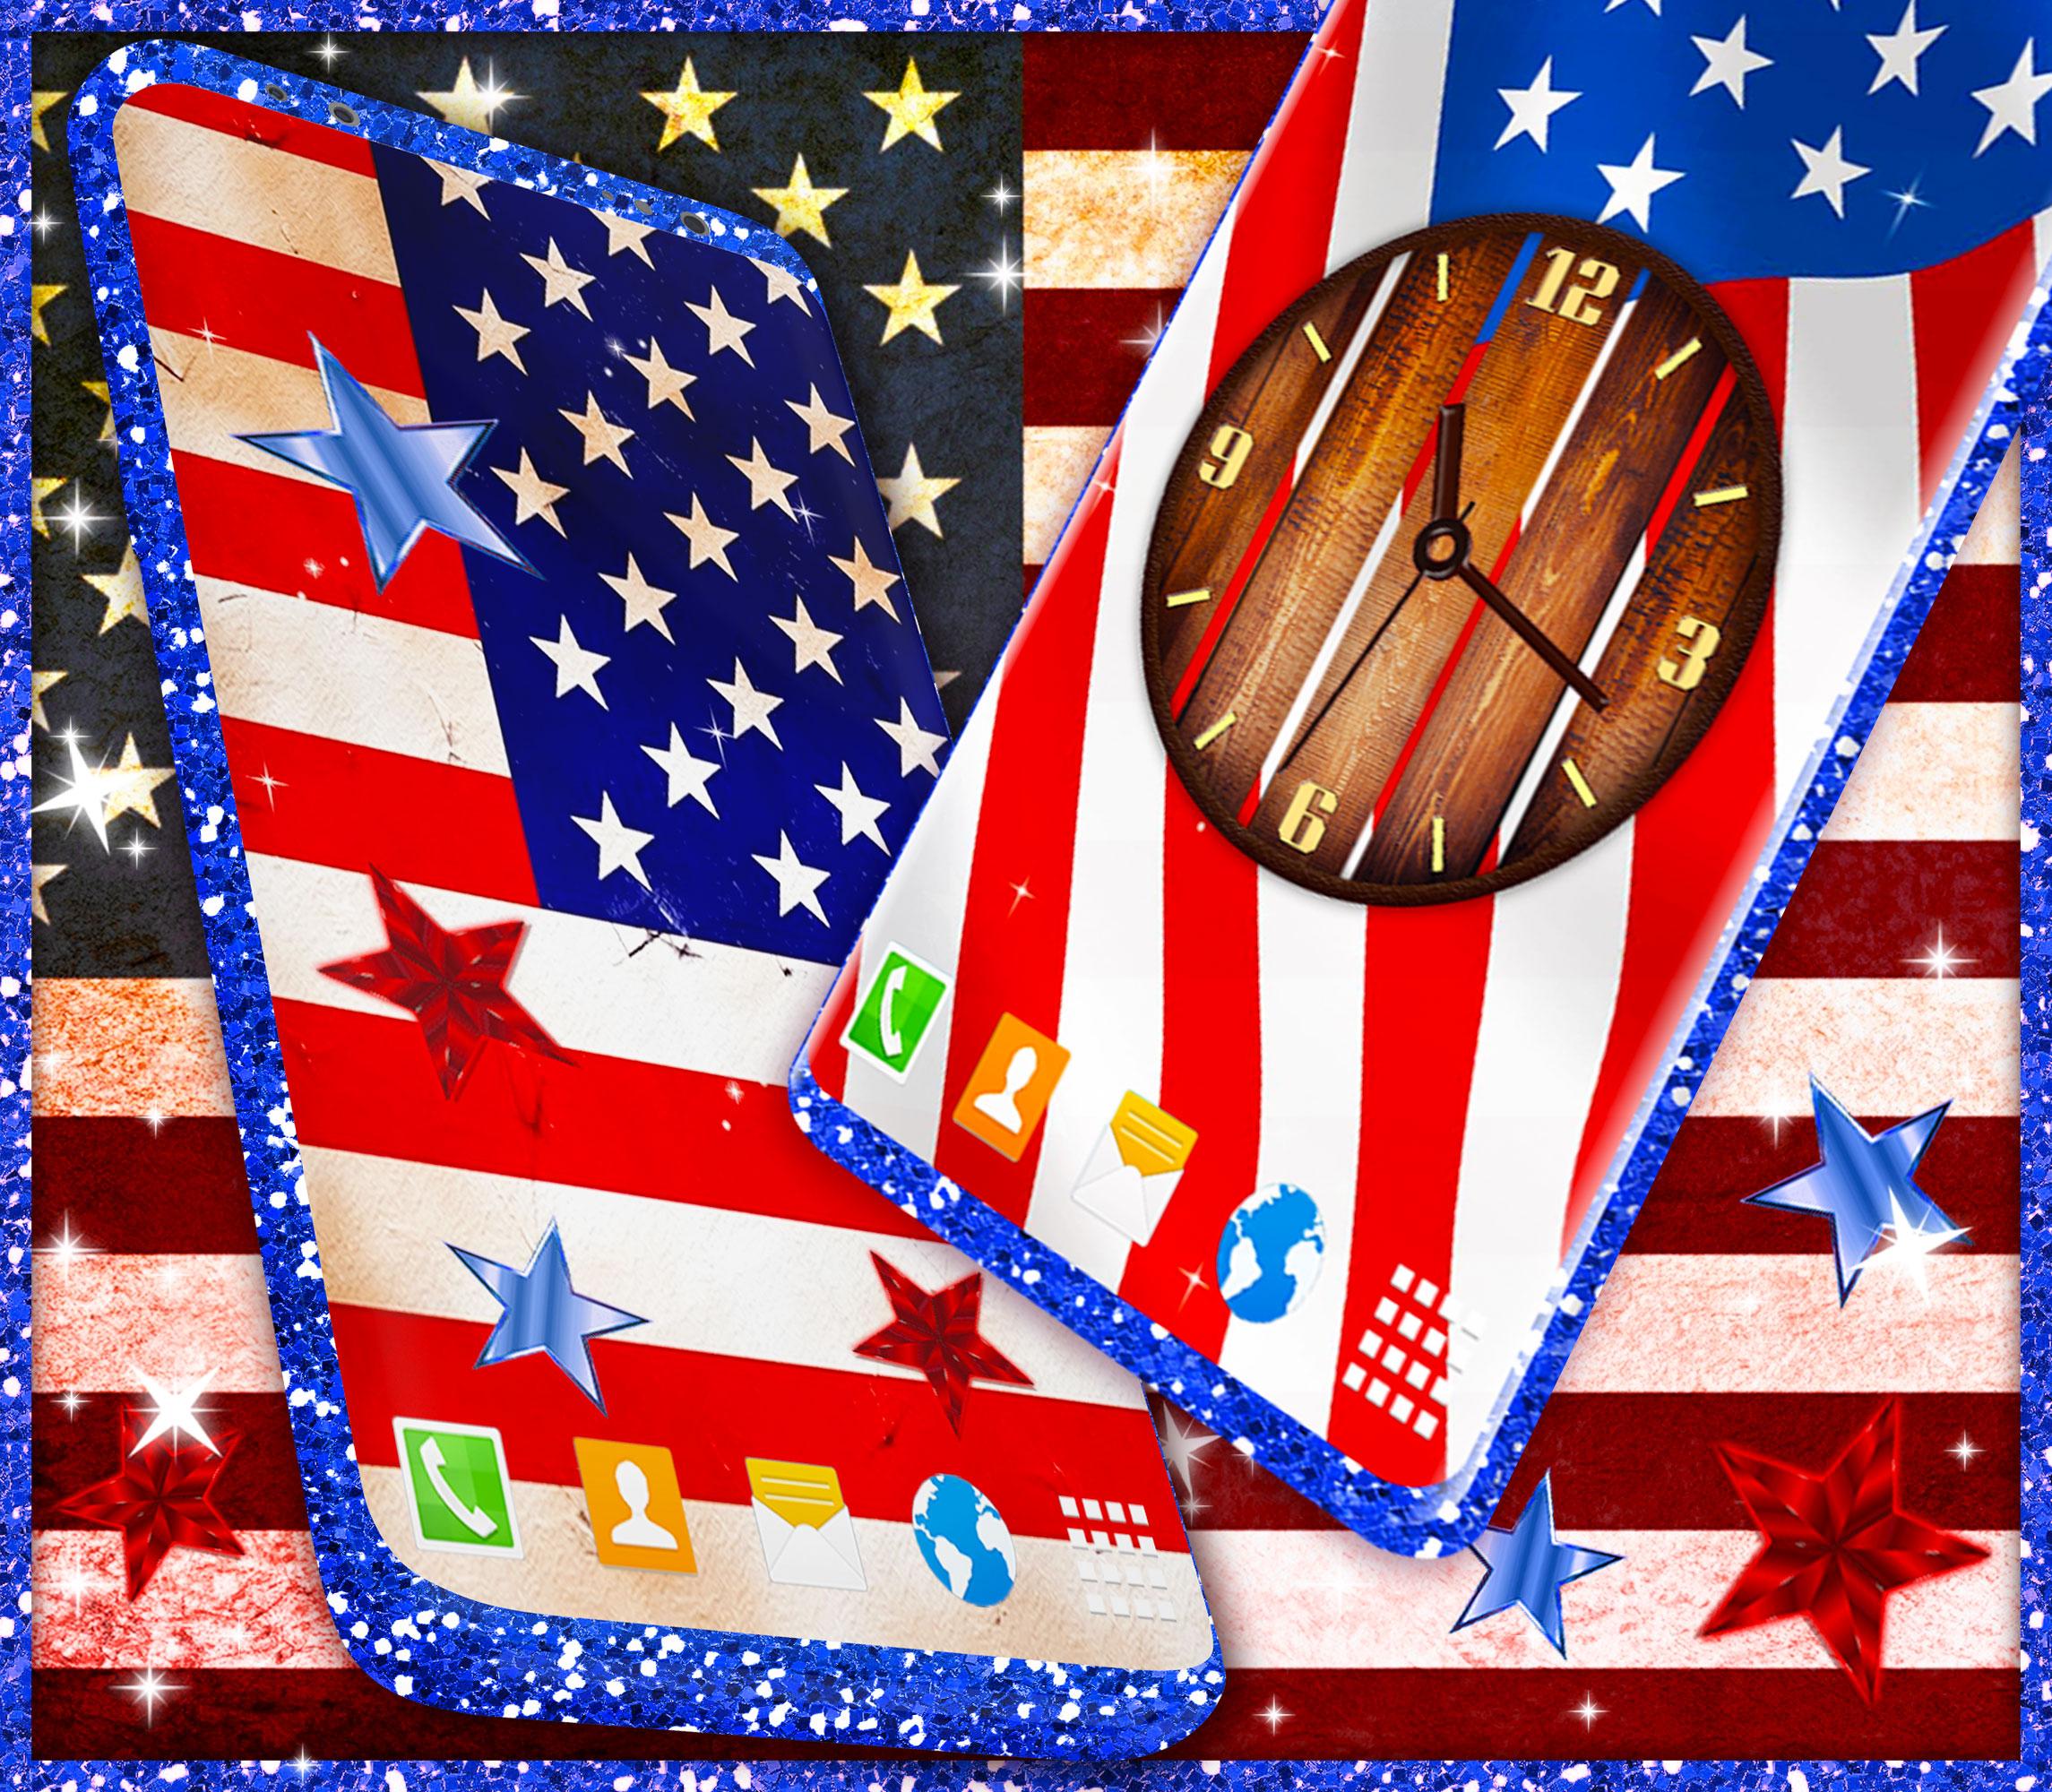 無料で American Flag Wallpapers Usa Hd Wallpaper Theme アプリの最新版 Apk6 4 2をダウンロードー Android用 American Flag Wallpapers Usa Hd Wallpaper Theme Apk の最新バージョンをダウンロード Apkfab Com Jp